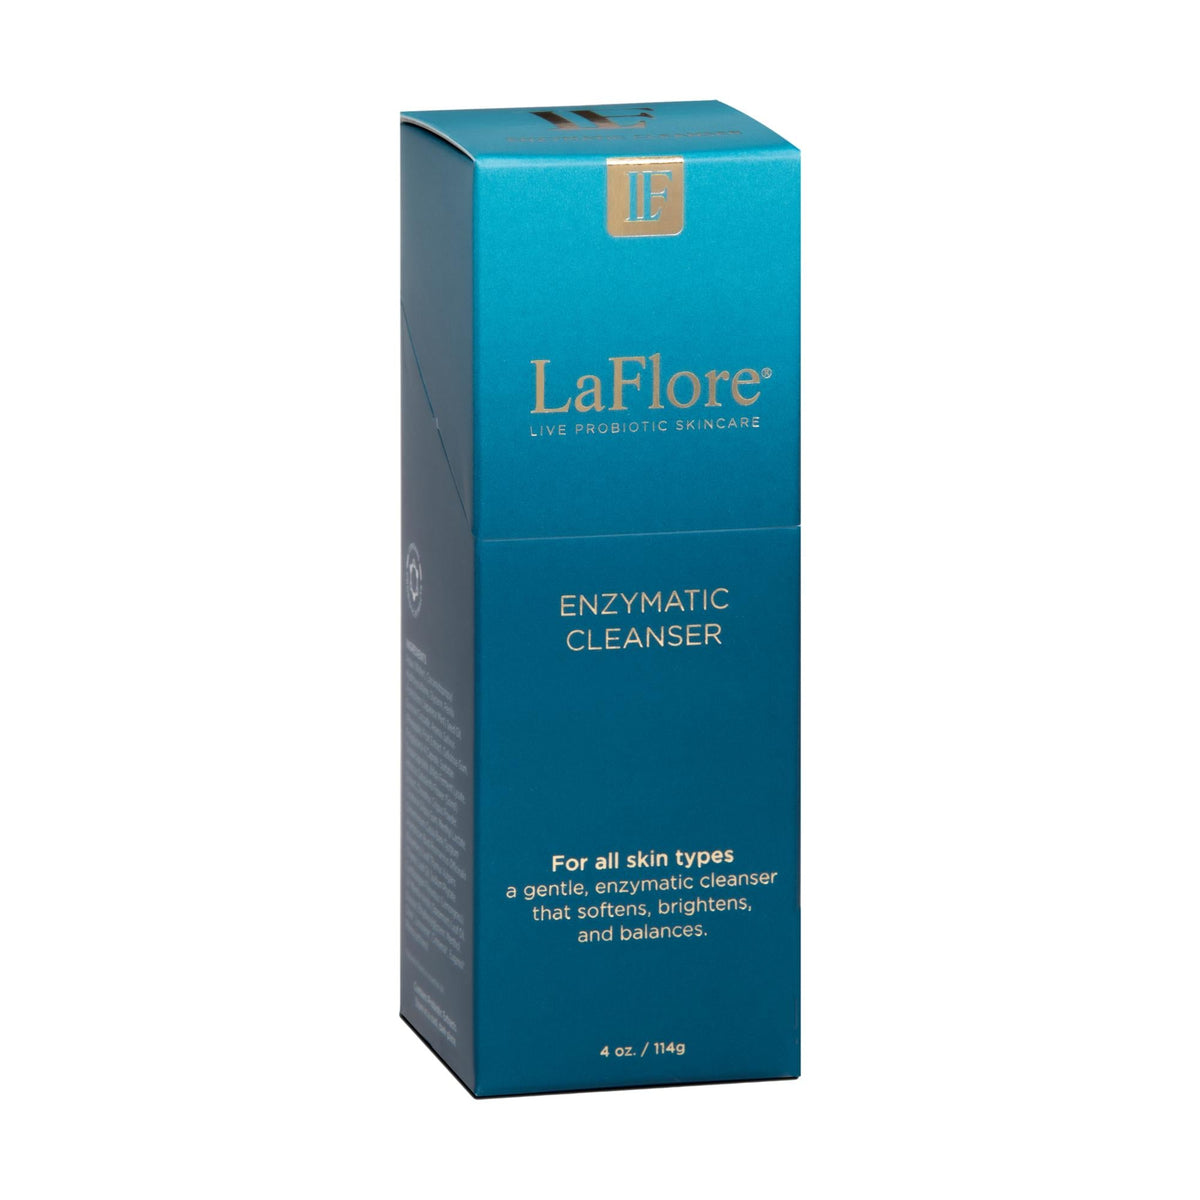 LaFlore Enzymatic Cleanser, 4 oz